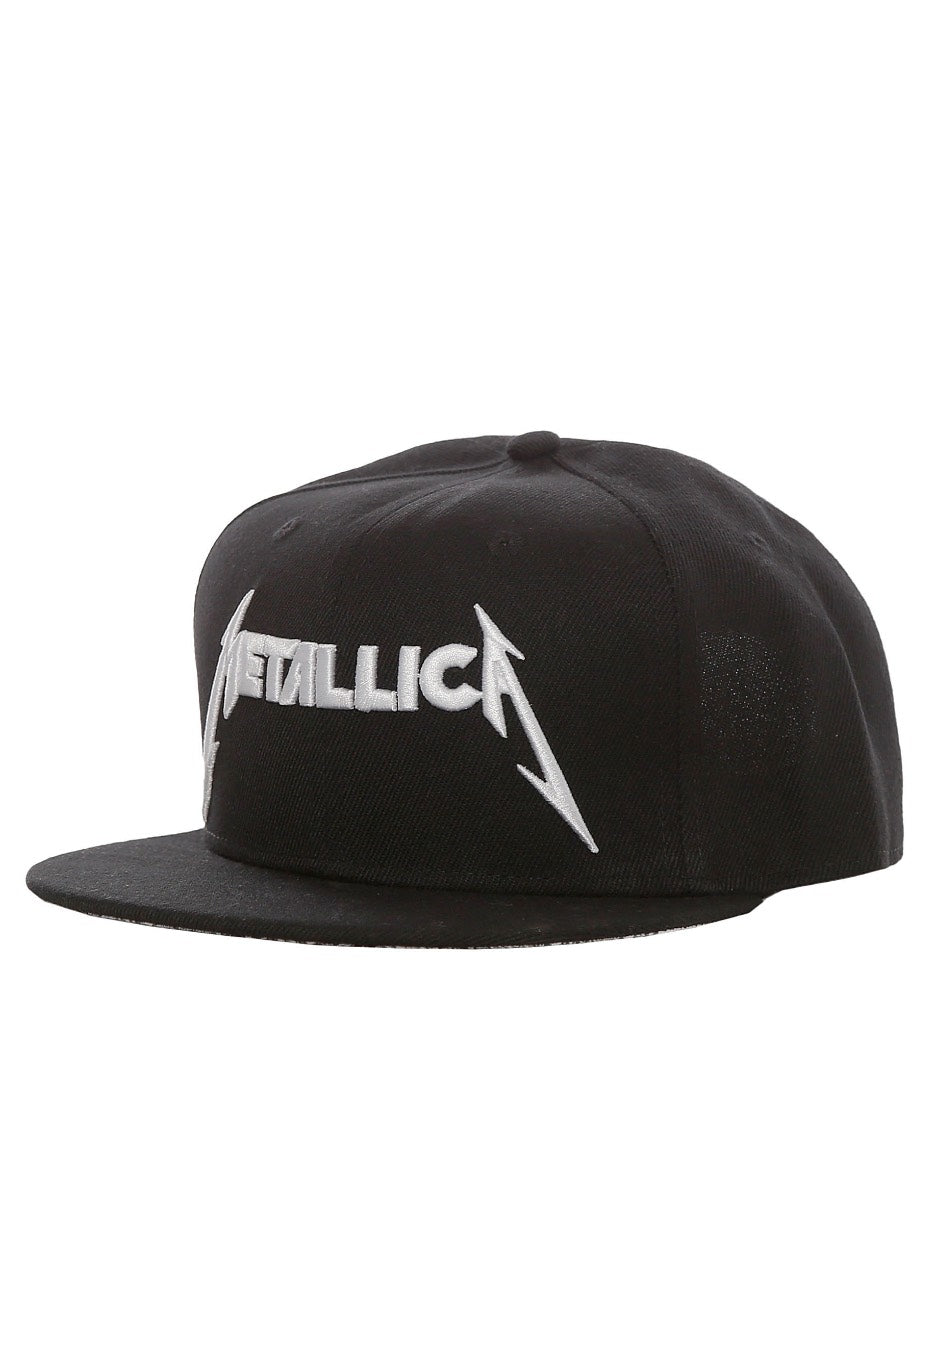 Metallica - Damage Inc. - Cap